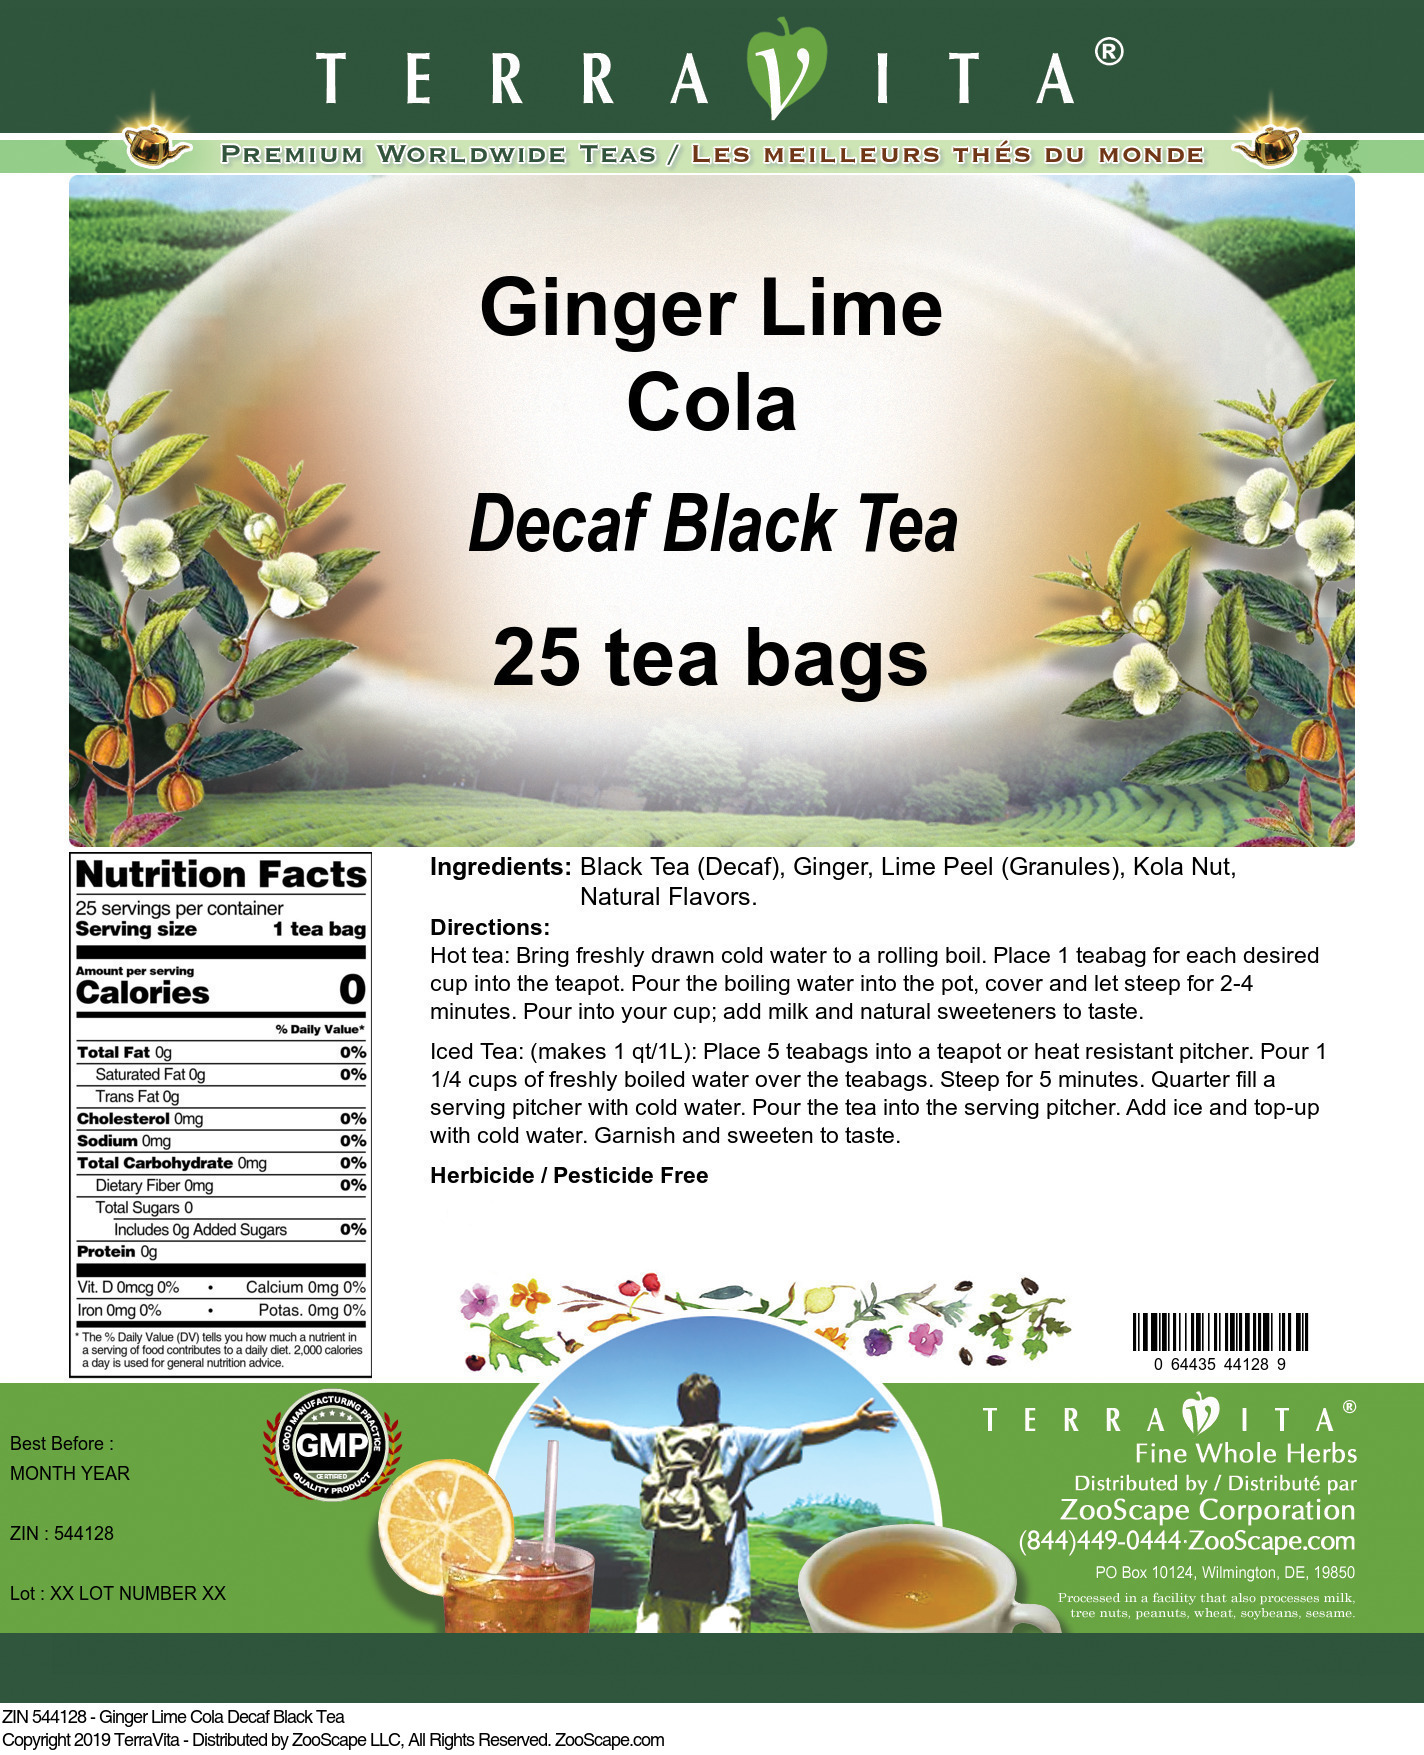 Ginger Lime Cola Decaf Black Tea - Label